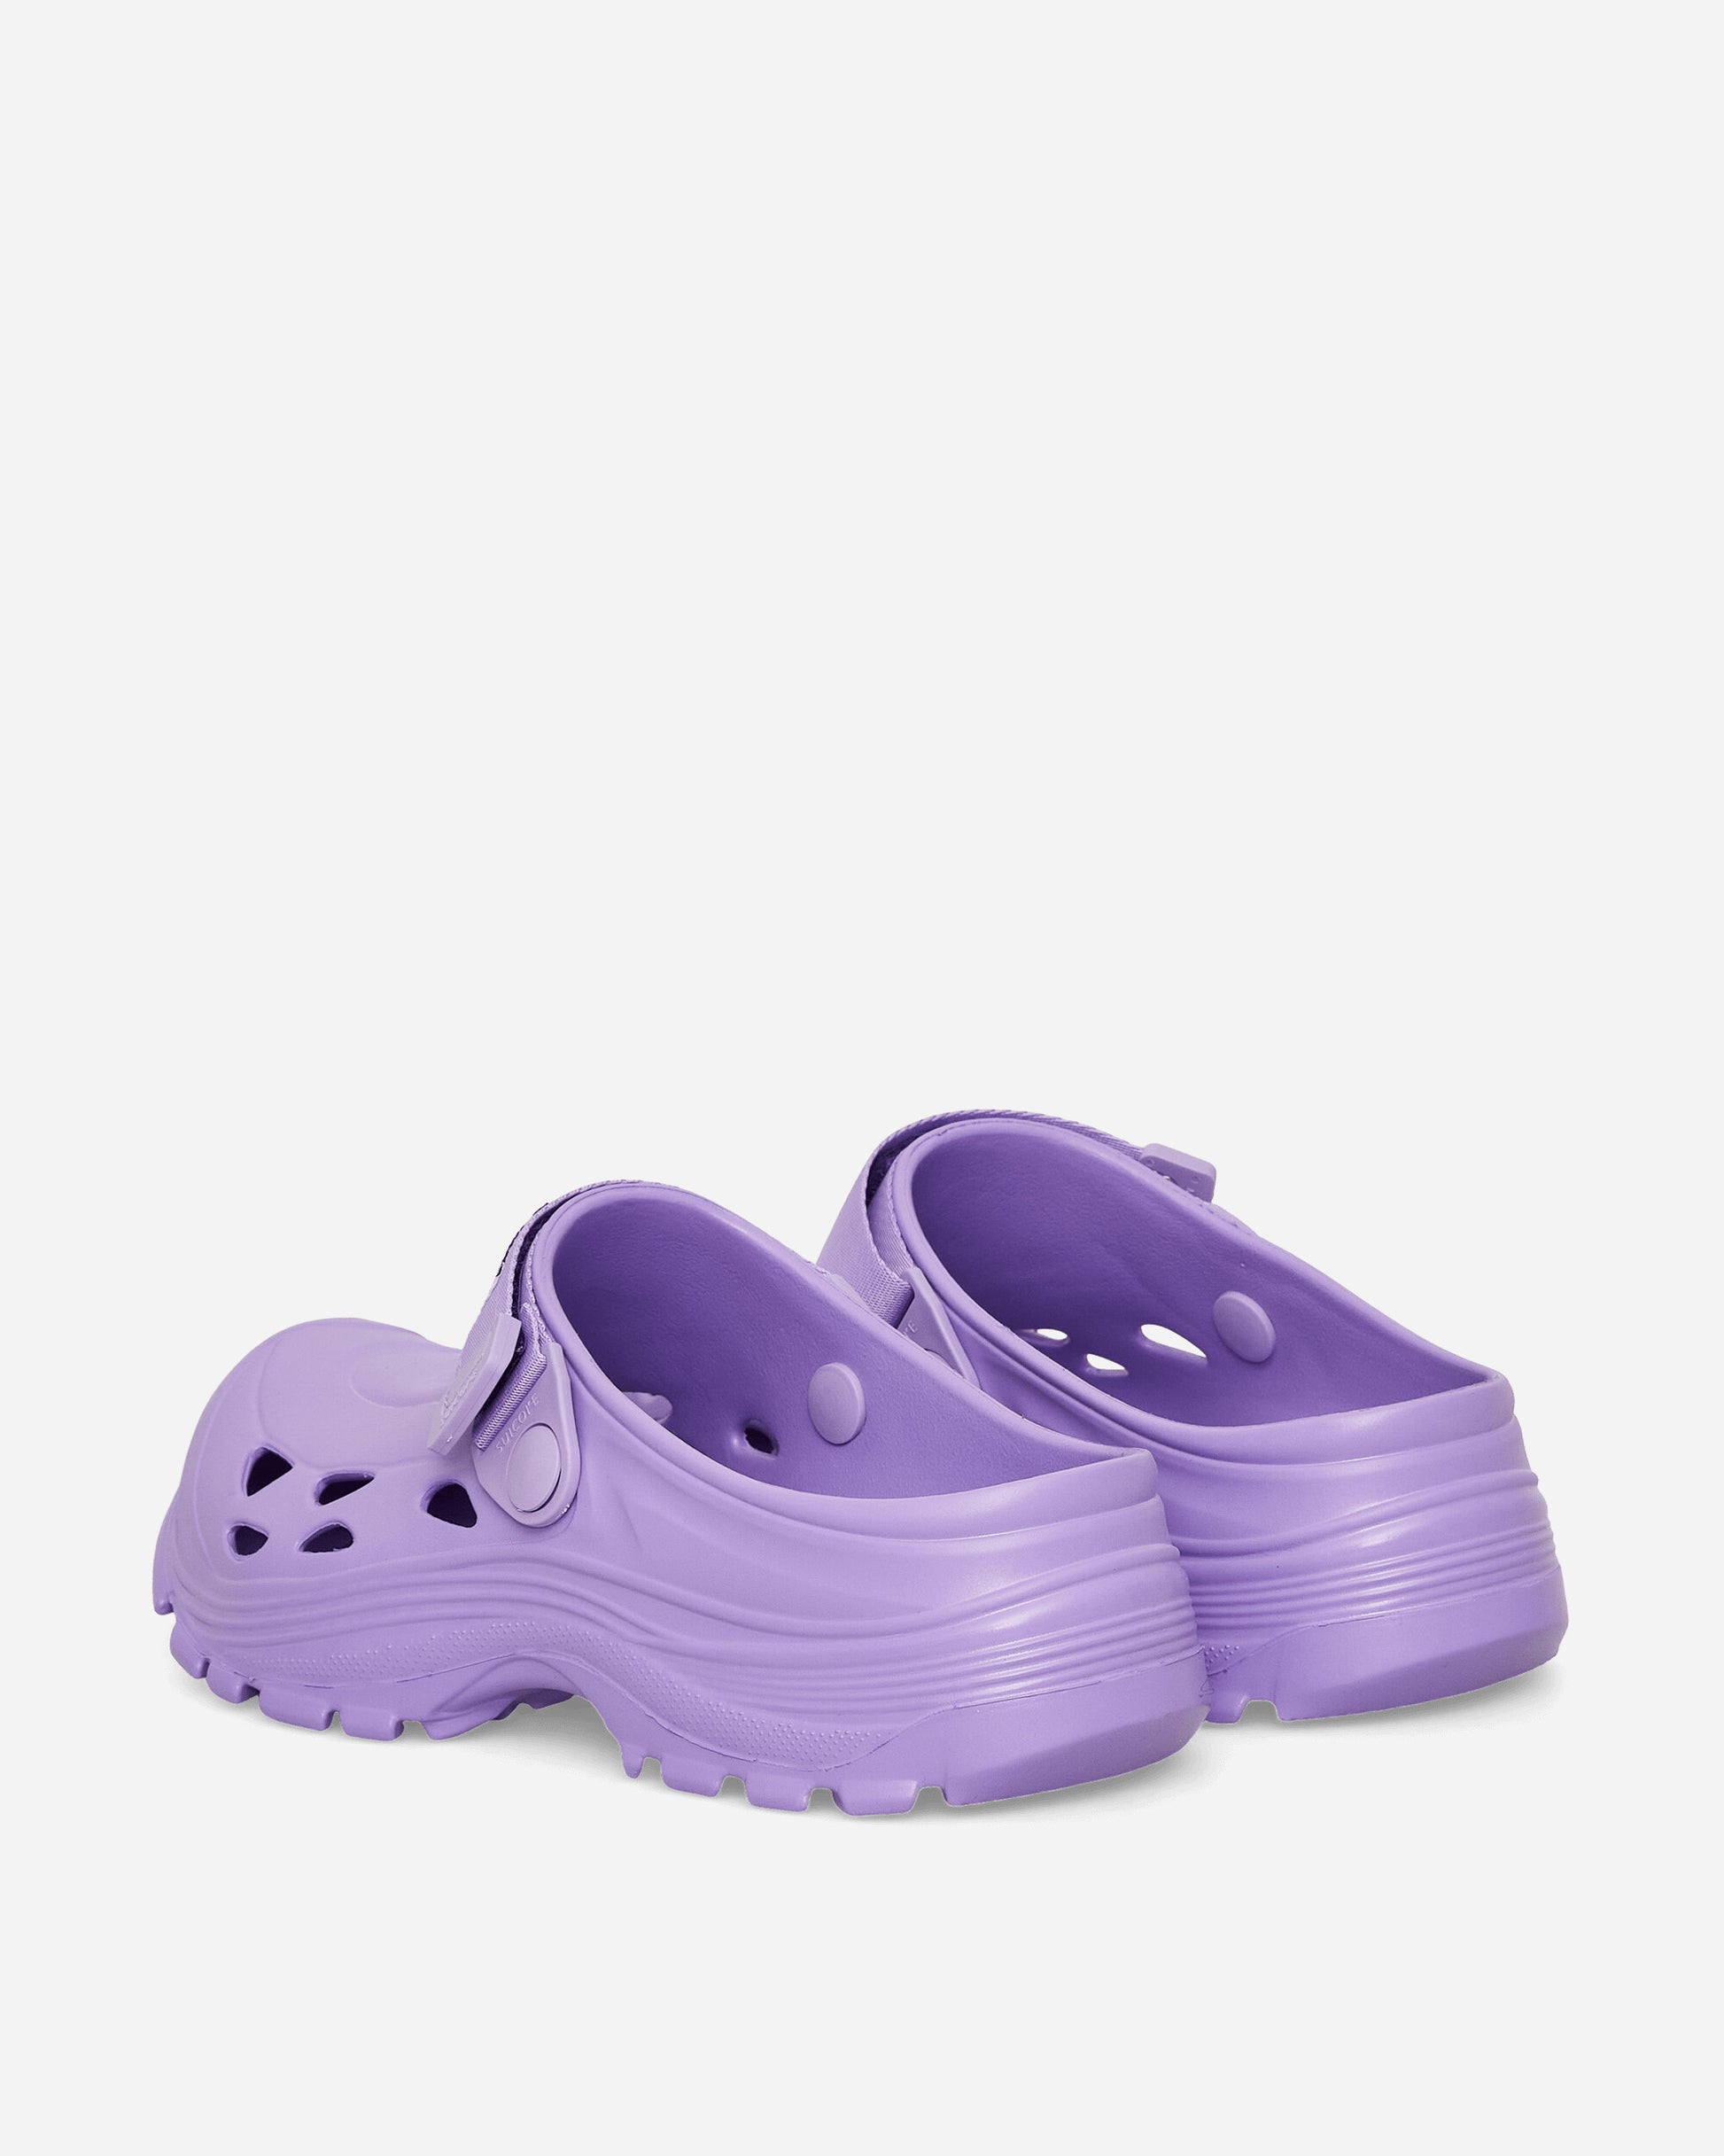 Suicoke Mok Purple Sneakers Low OGINJ101 PRP